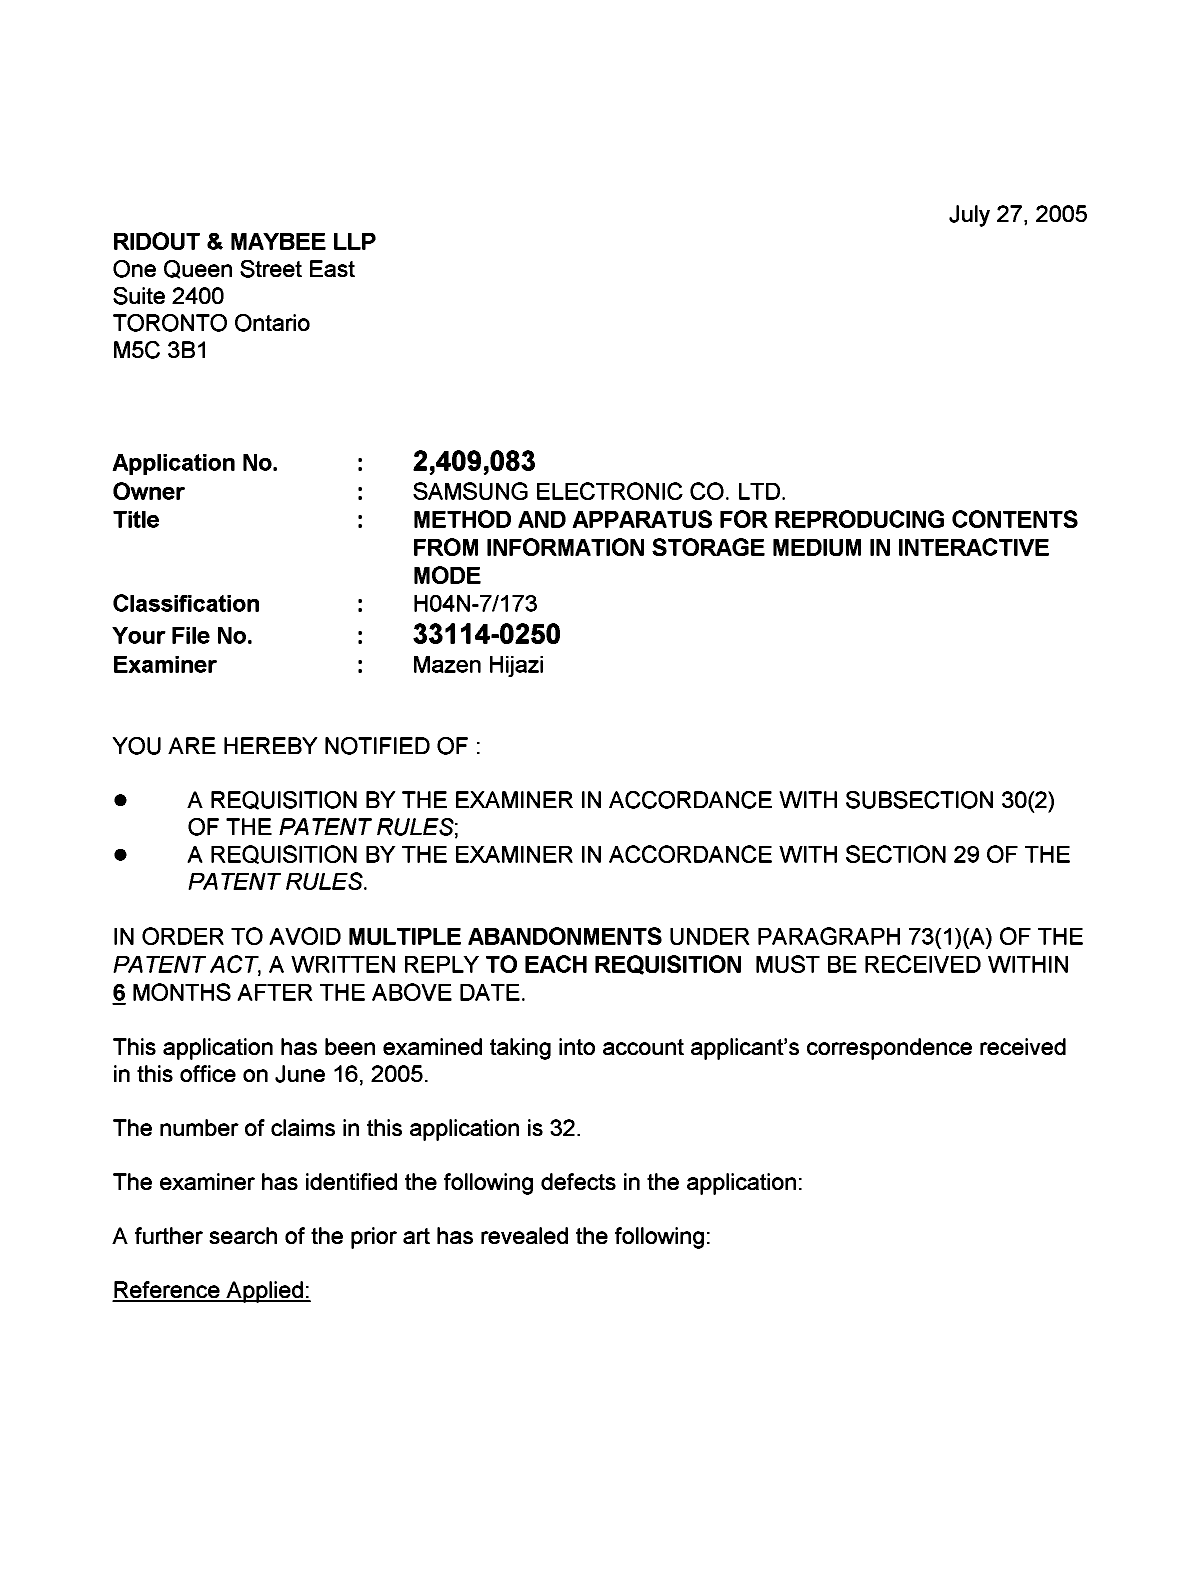 Document de brevet canadien 2409083. Poursuite-Amendment 20050727. Image 1 de 3